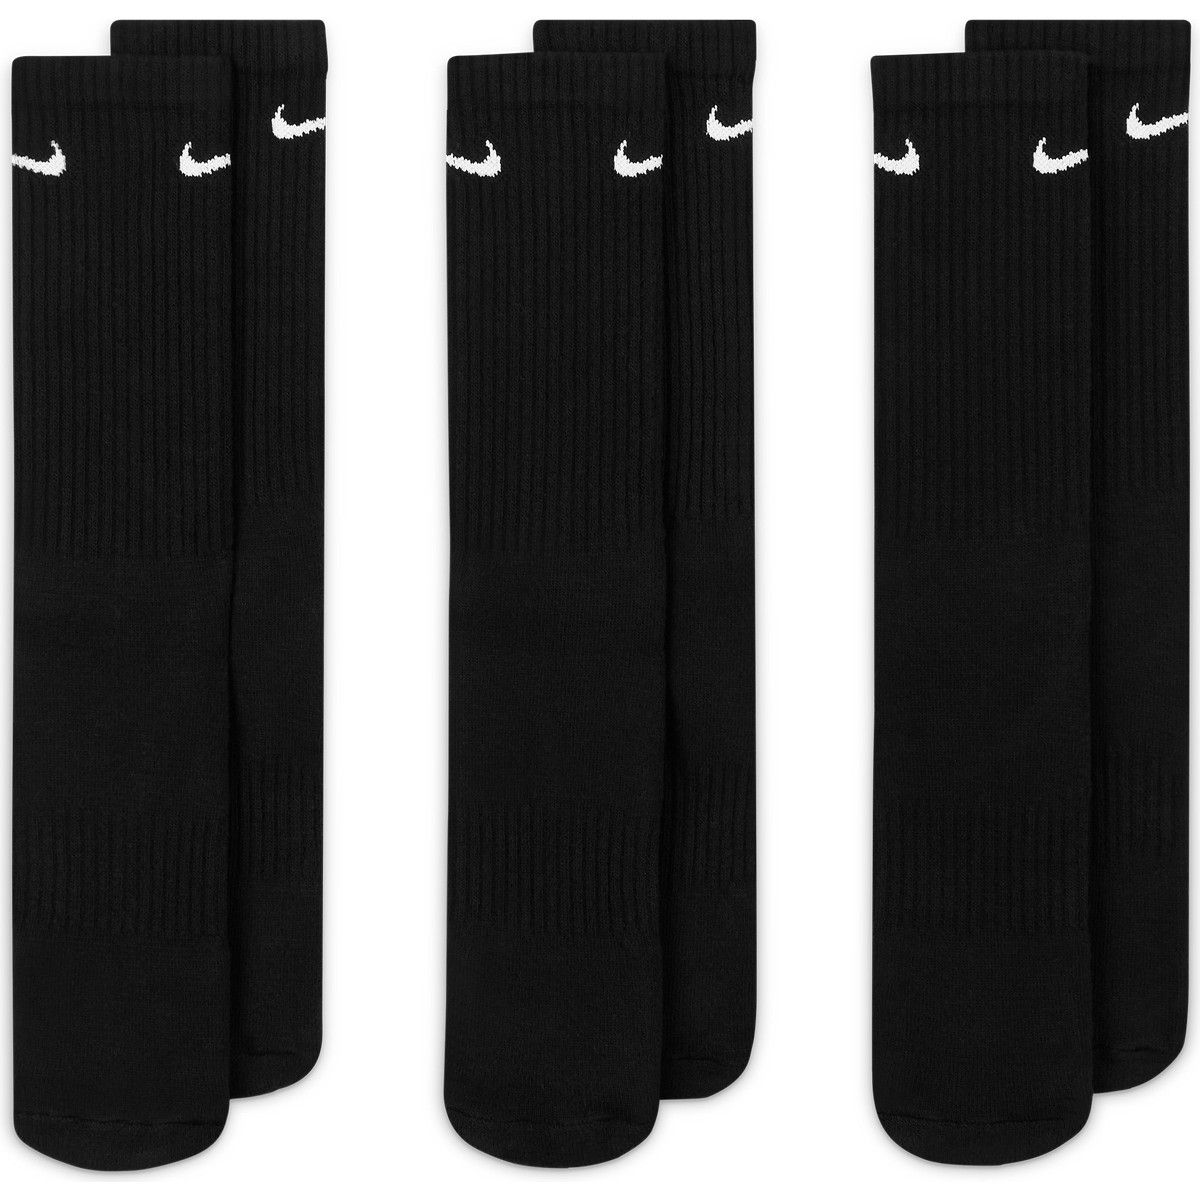 Nike Cushion Crew Paire de 3 chaussettes Homme Blanc/Noir FR